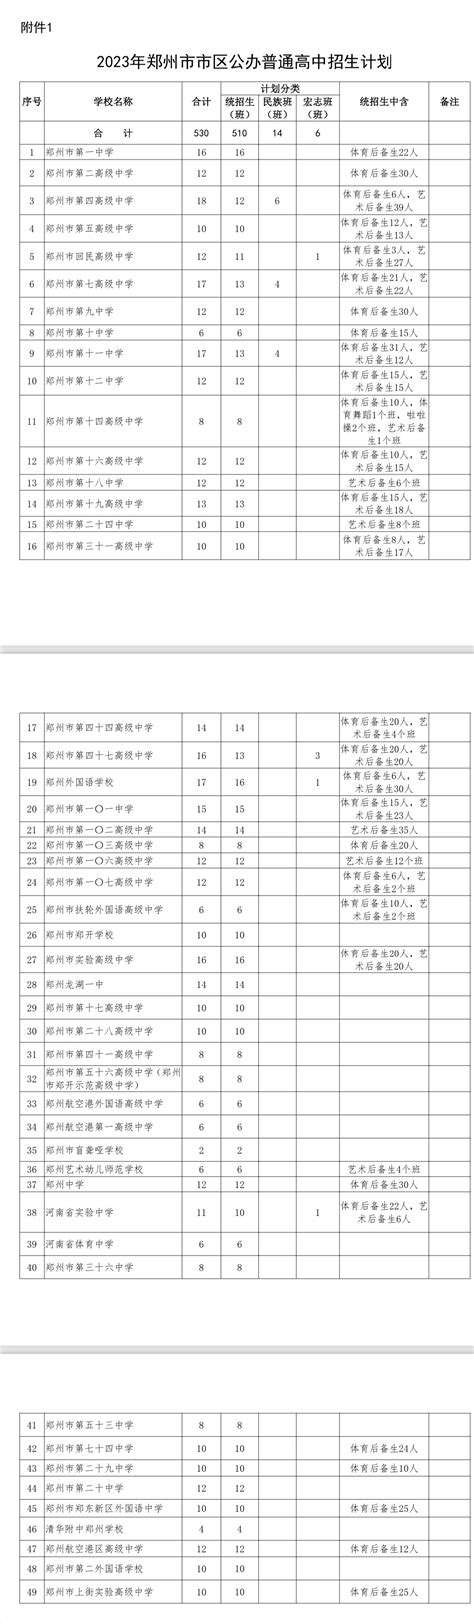 2018年郑州市中考各高中及分校和民办高中录取分说线大全